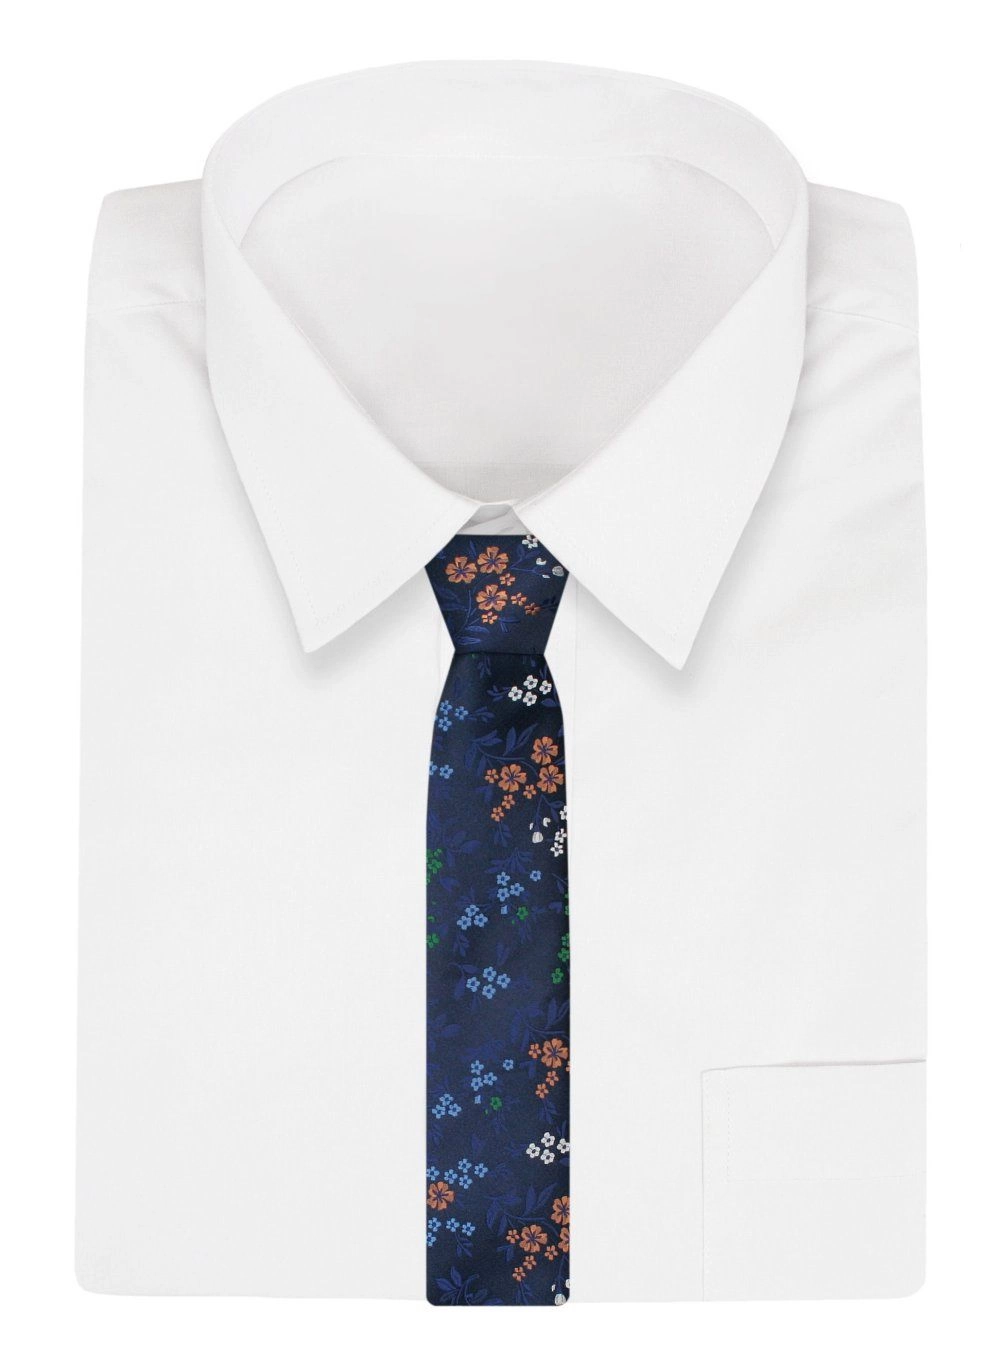 Krawat Klasyczny, Granatowy w Kolorowe Kwiatki, Męski, Szeroki 8 cm, Elegancki -CHATTIER